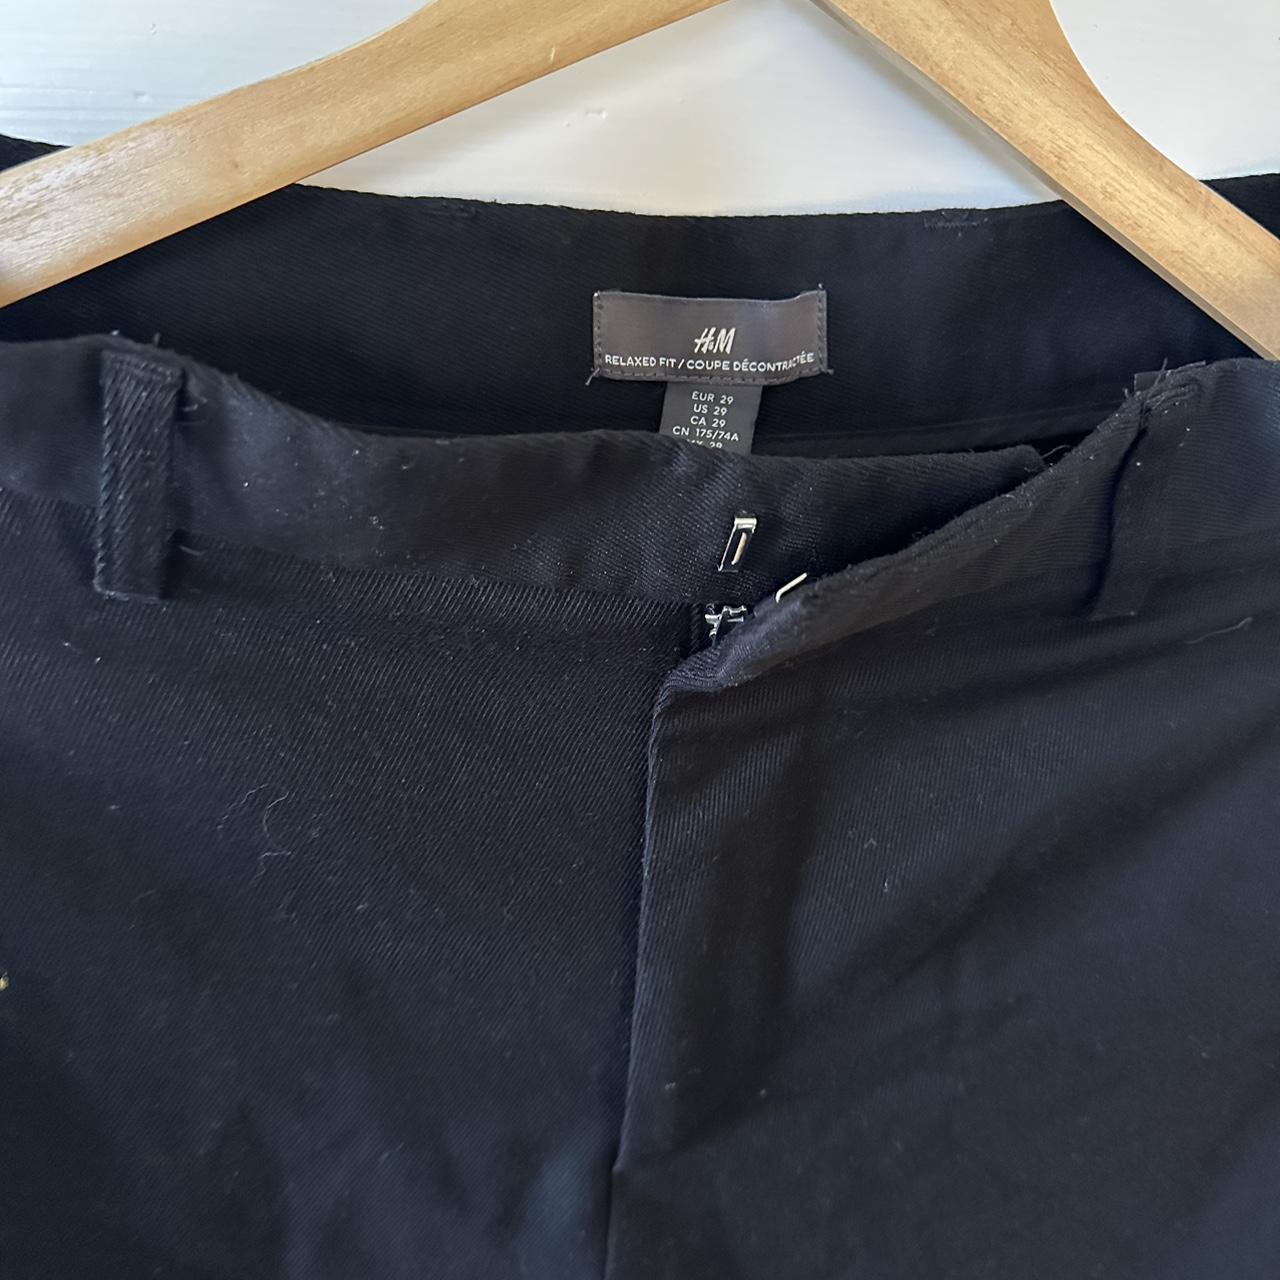 H&M Black Dress Pants Size 28 Good Condition - Depop